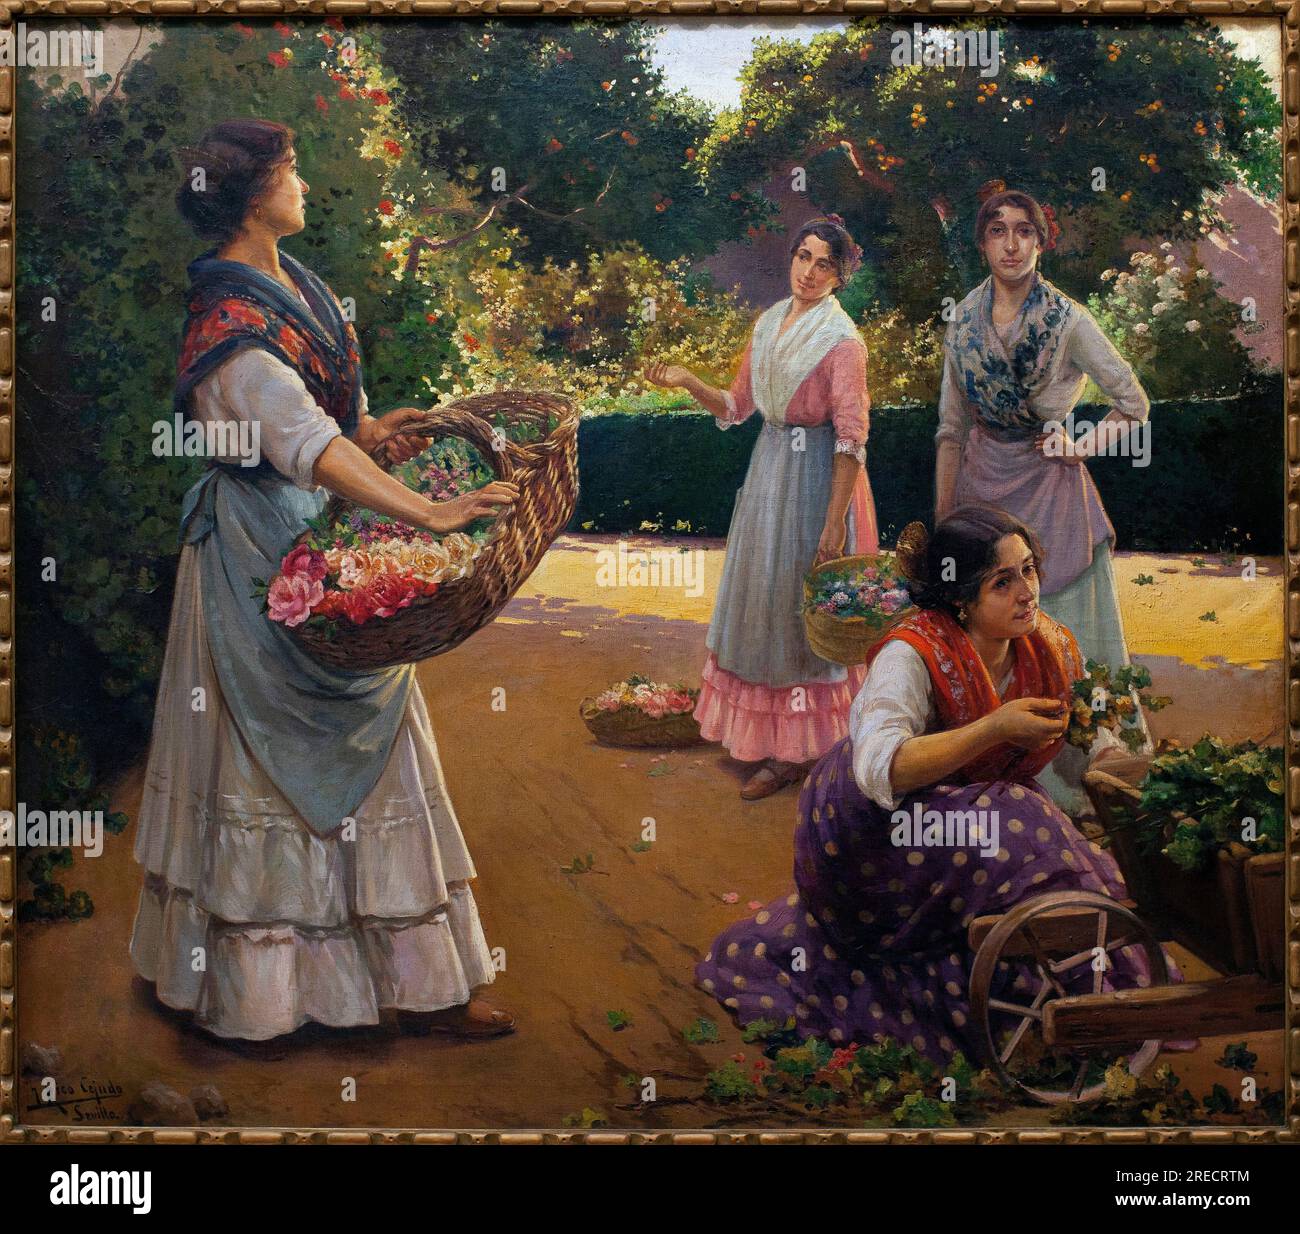 Fleuristes dans le parc de Maria Luisa - peinture de Jose Rico Cejudo (1864-1939), huile sur toile, 1920 - Musée des Beaux Arts de Seville, Espagne Banque D'Images